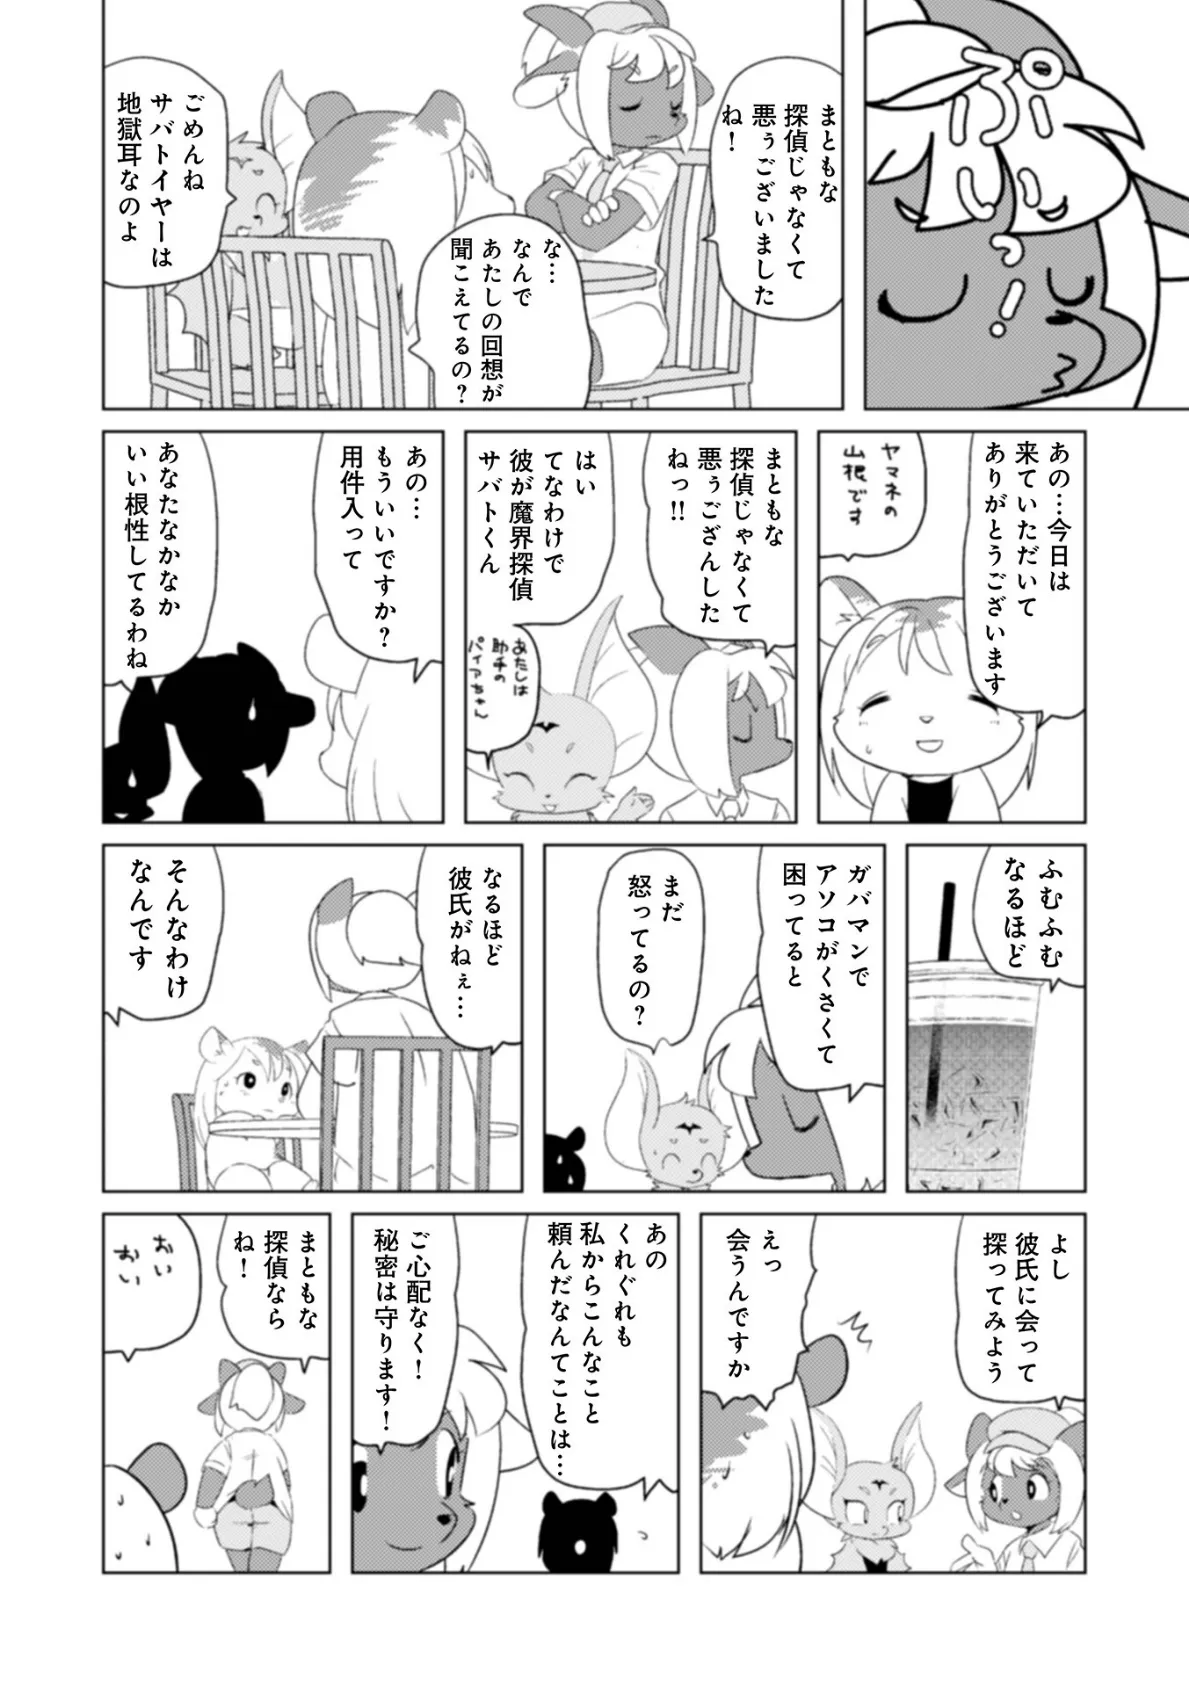 魔界探偵サバトくん第1巻 30ページ